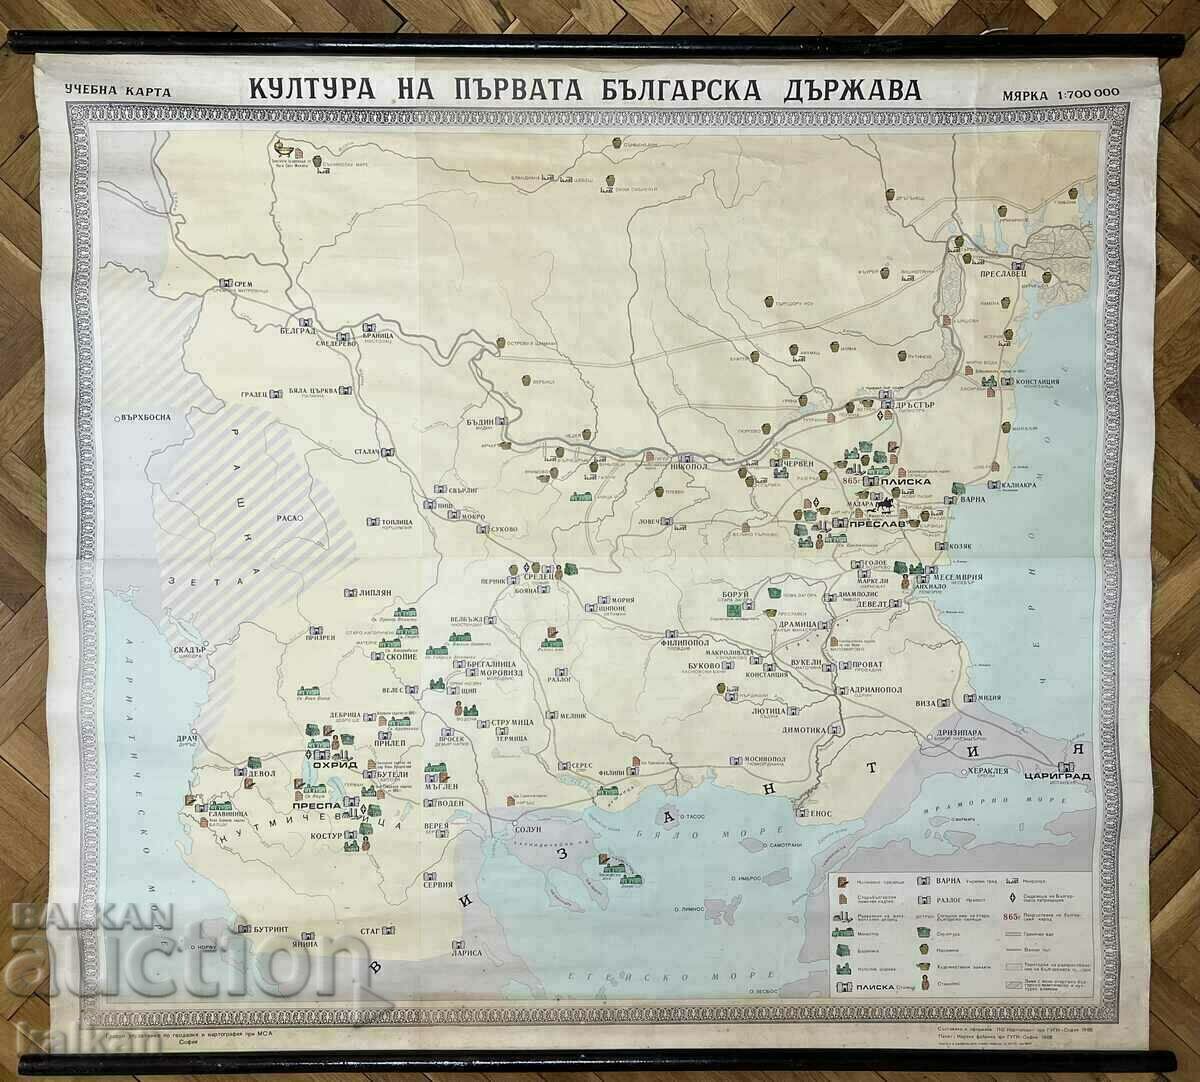 Учебна карта. Култура на първата българска държава 1969